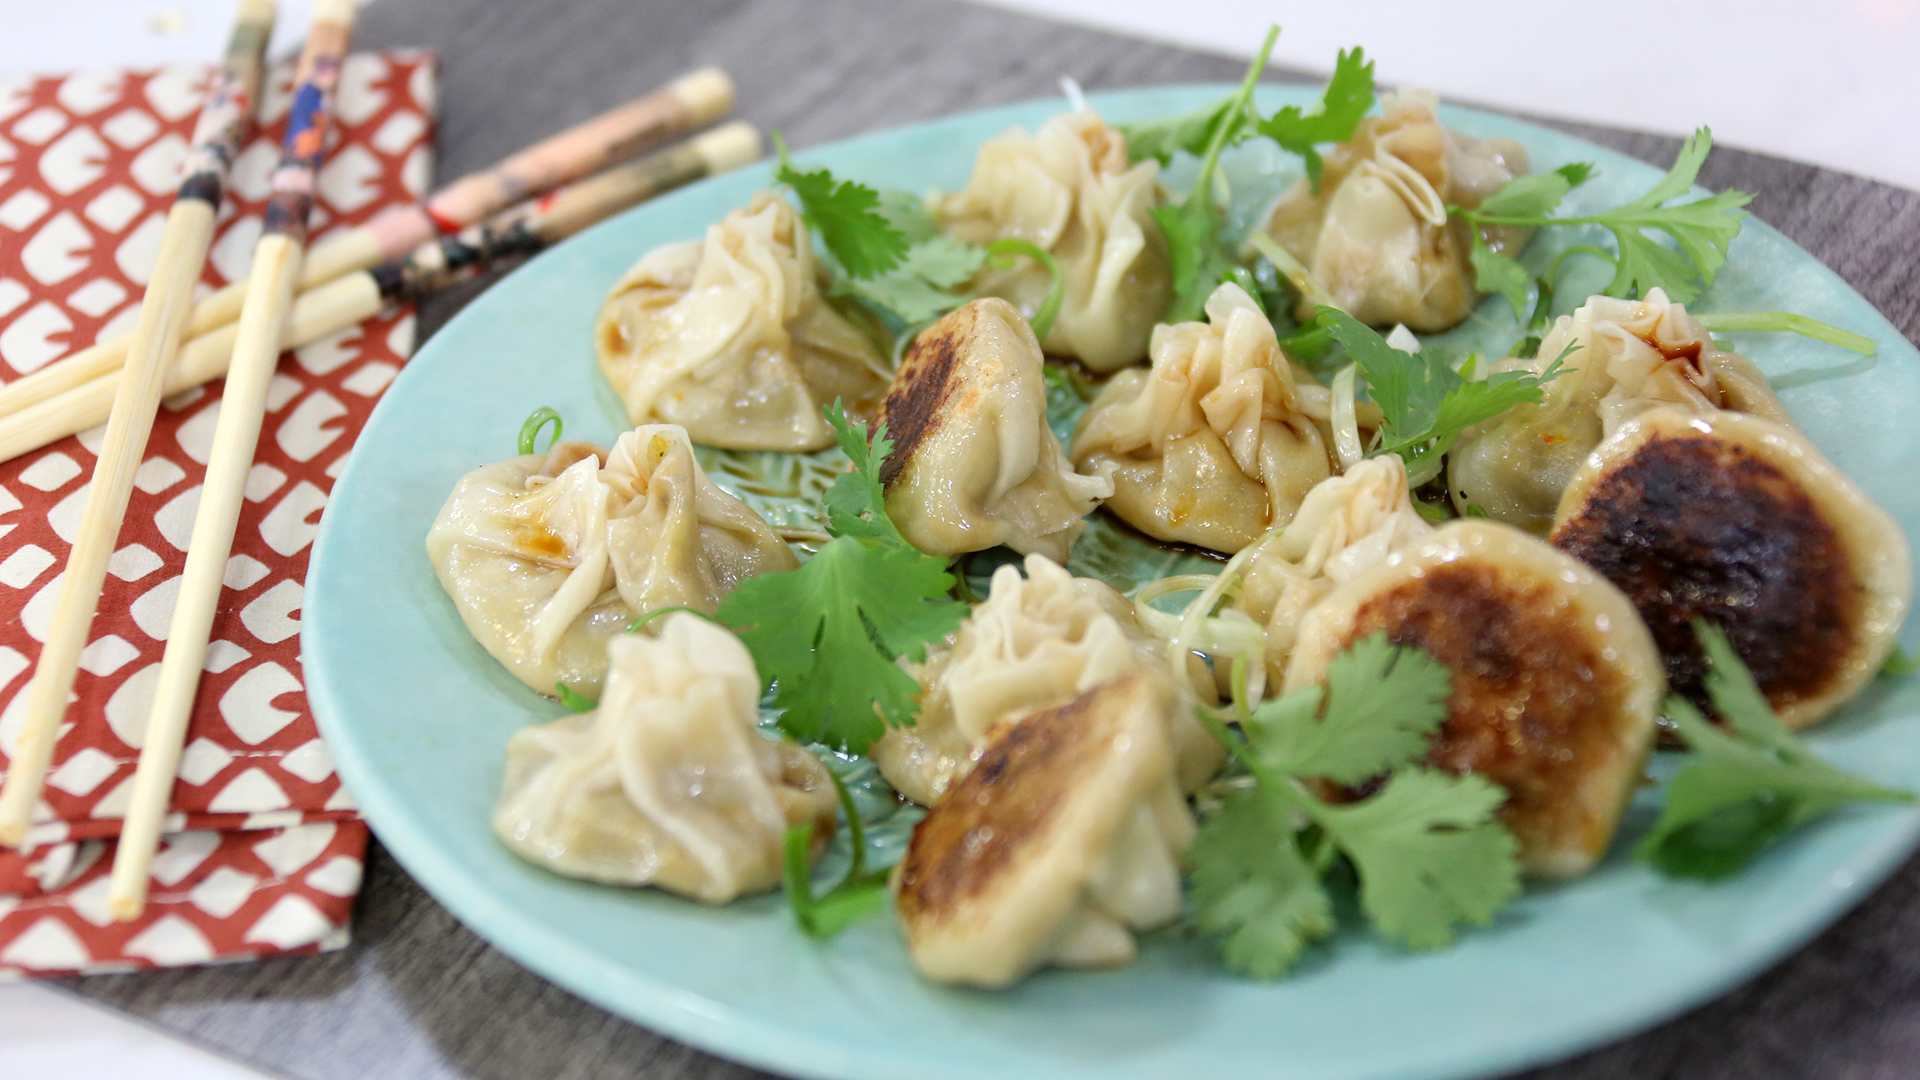 Crispy-bottom steamed dumplings